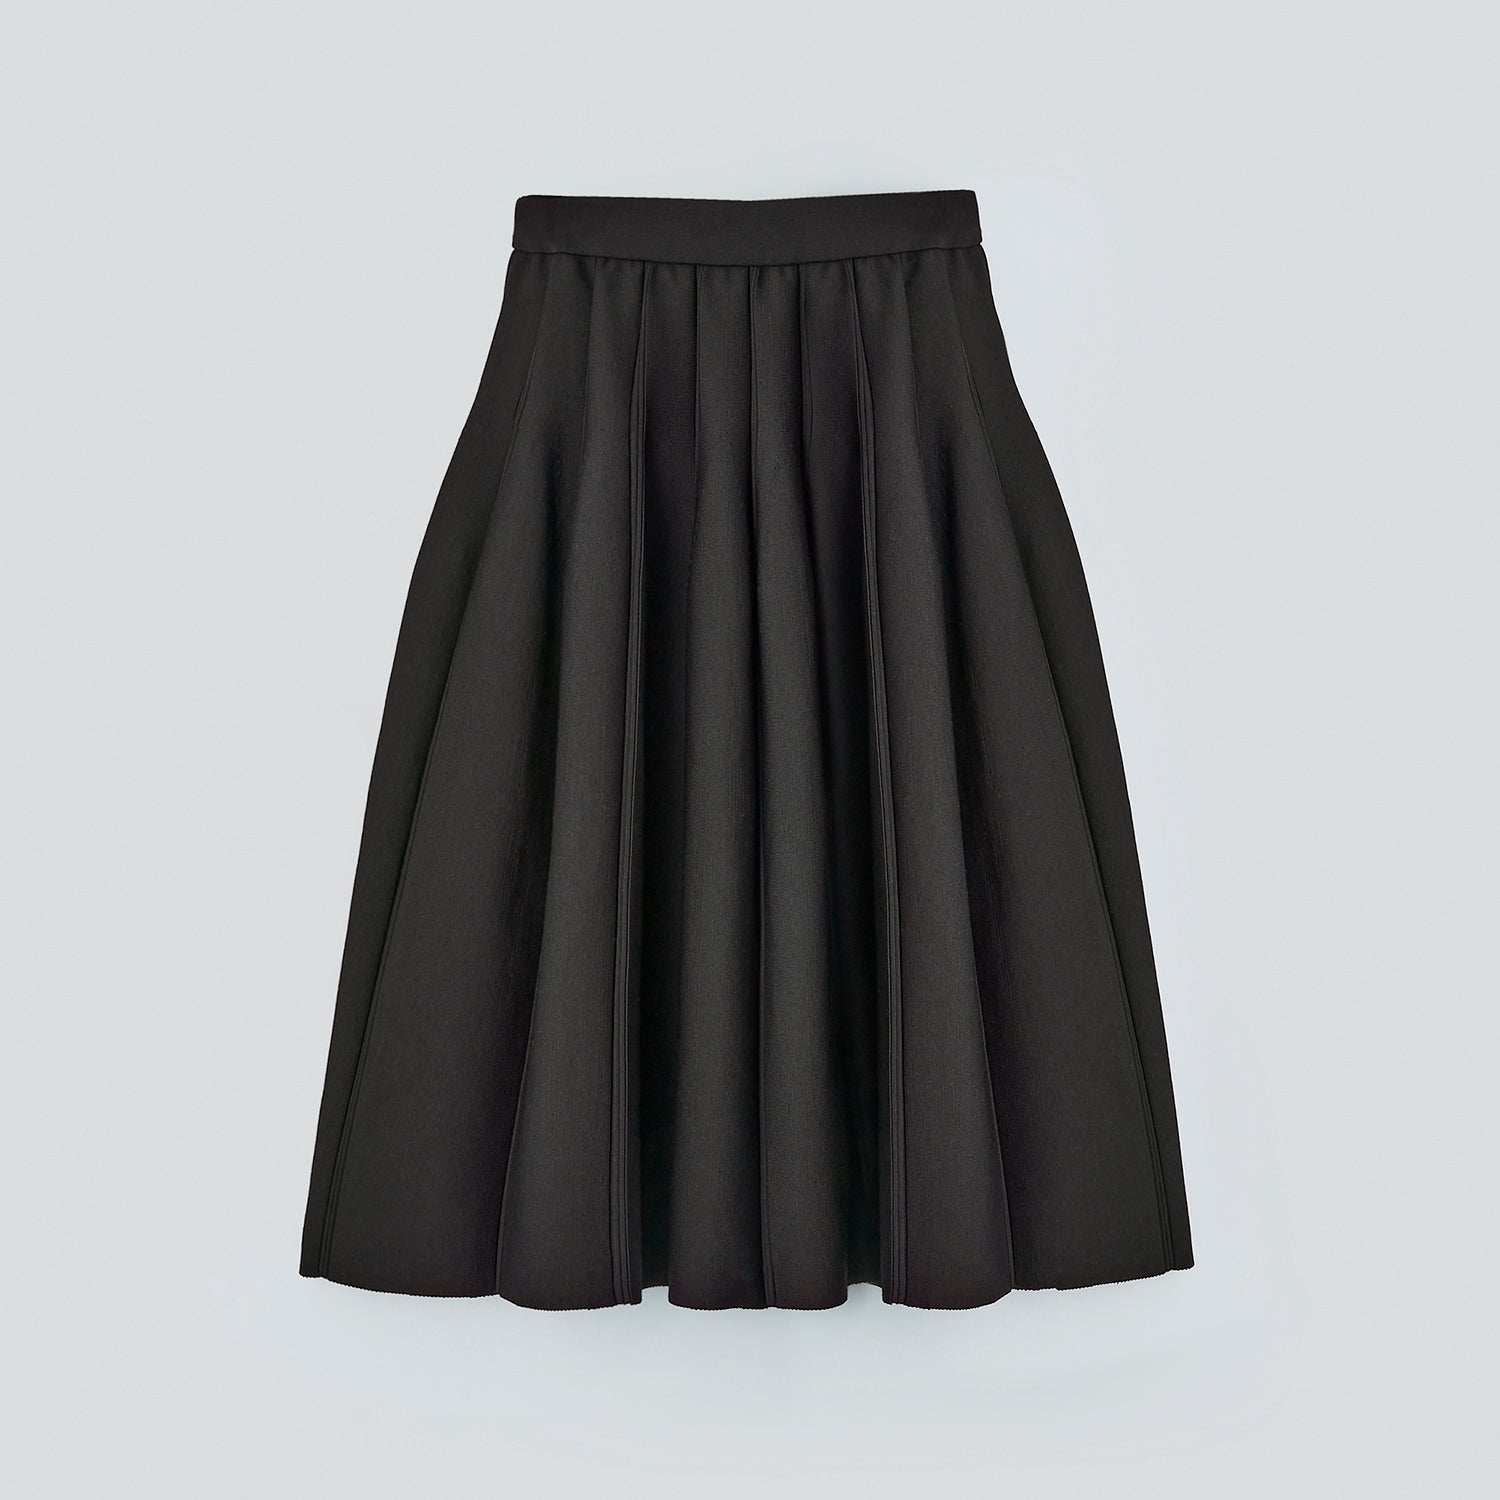 スカート丈727cm新品未使用FOXEY Lafayette Skirt 40 ブラックブラック